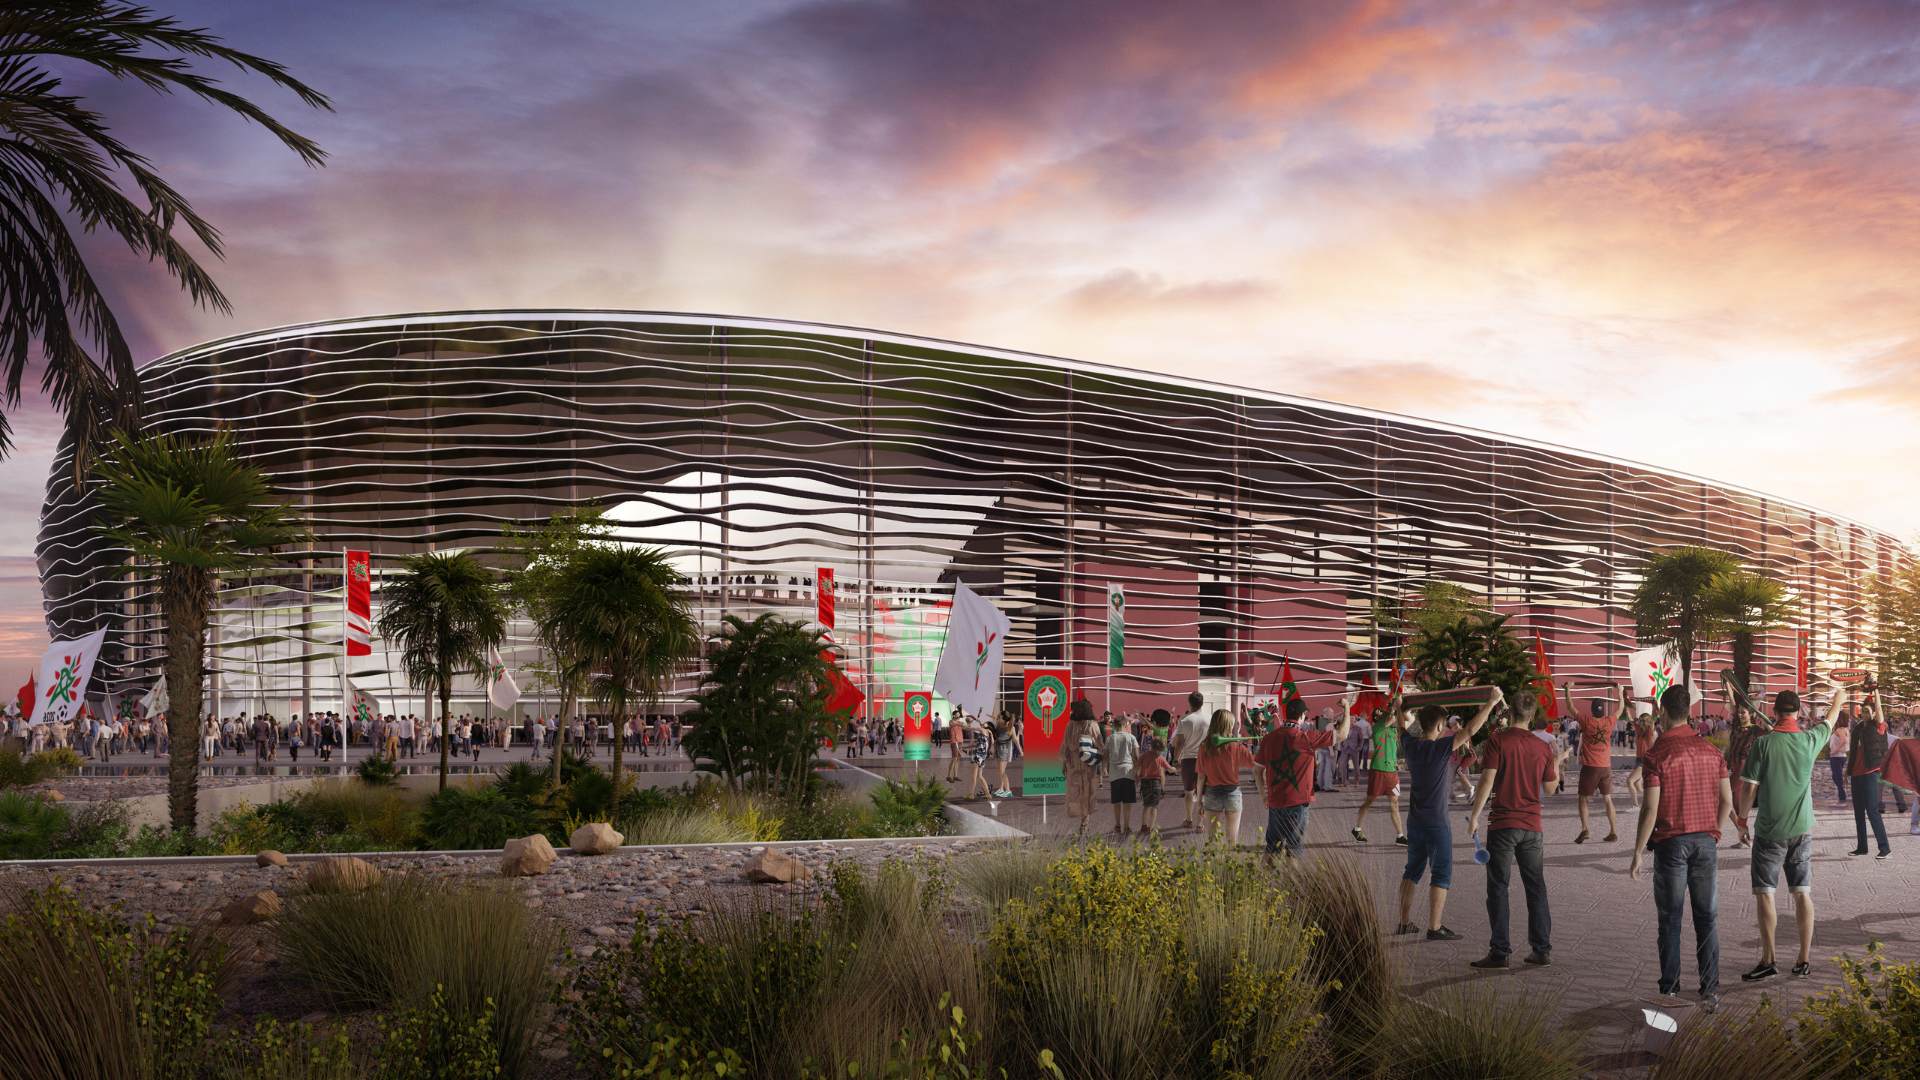 Architecture sportive - Stade modélisé en 3D par notre studio 3D